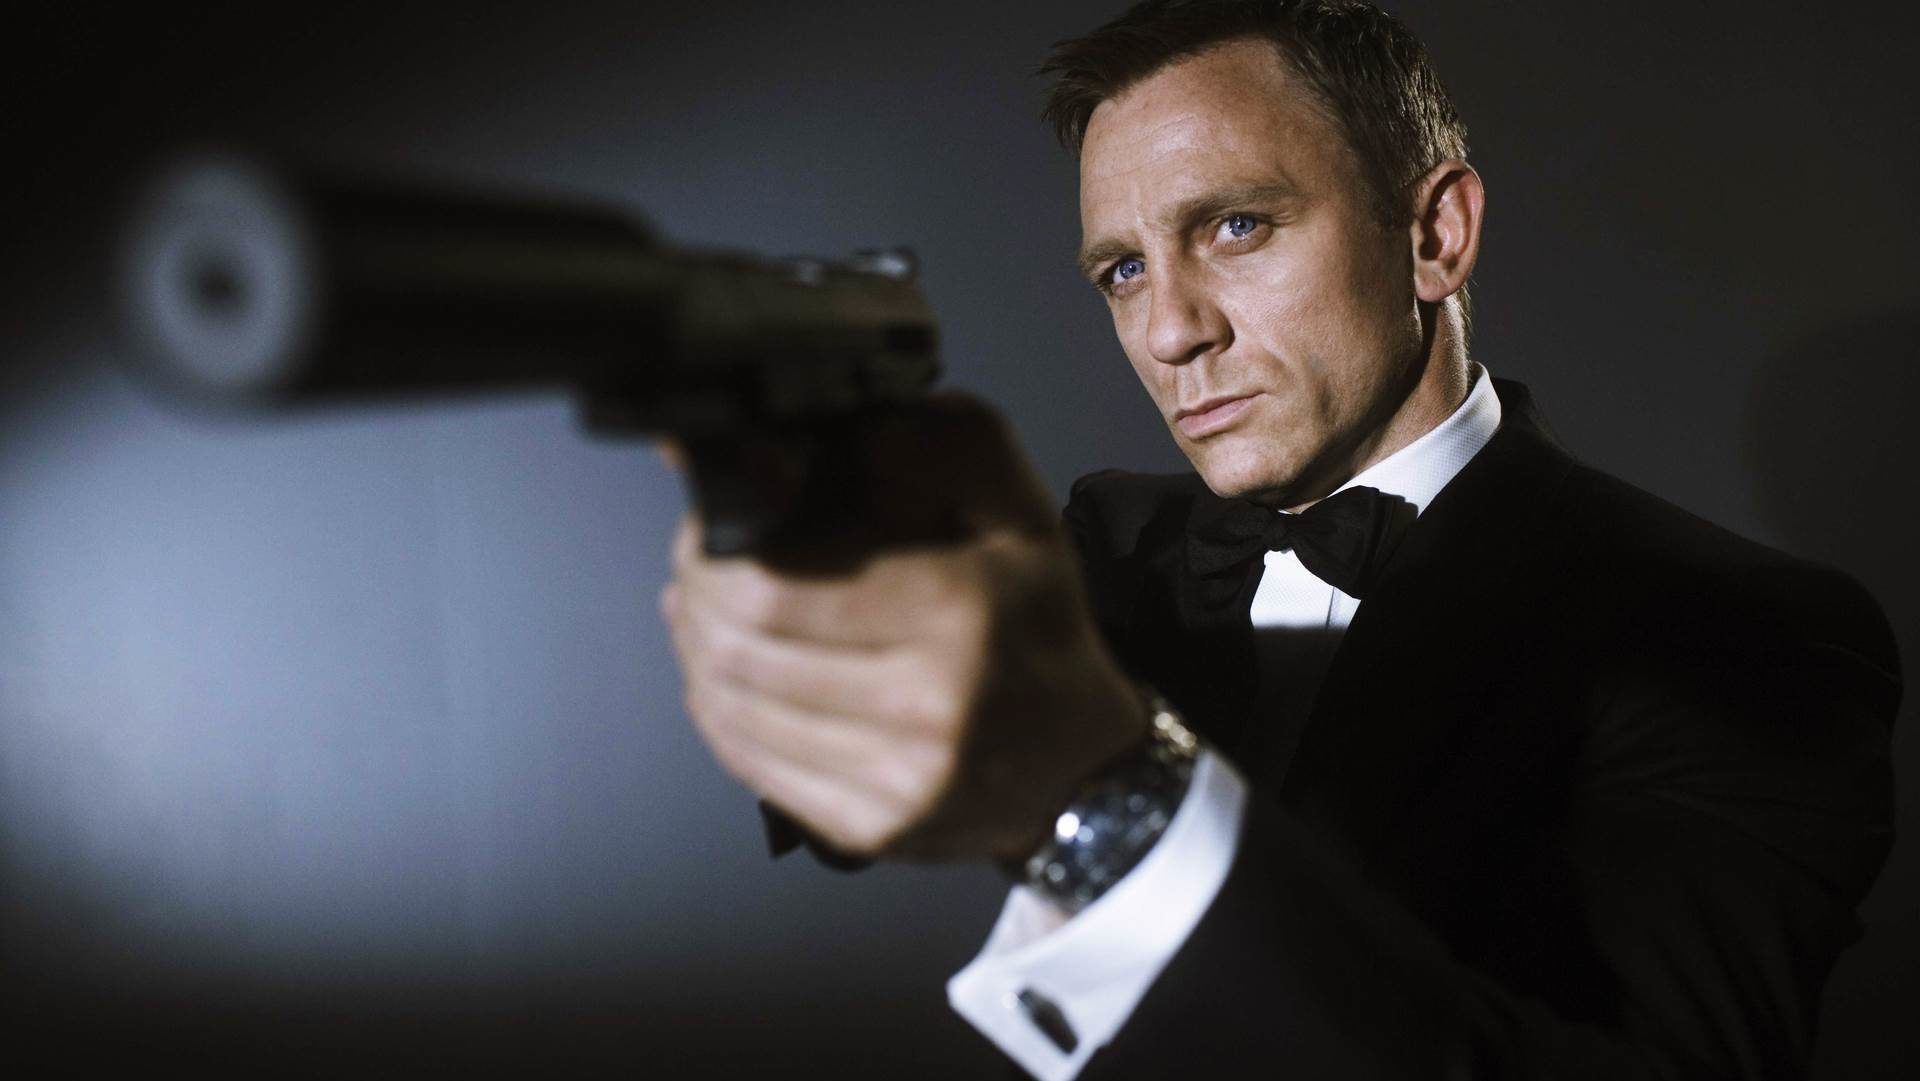 Casa do 007, MGM é vendida por R$ 44 bilhões